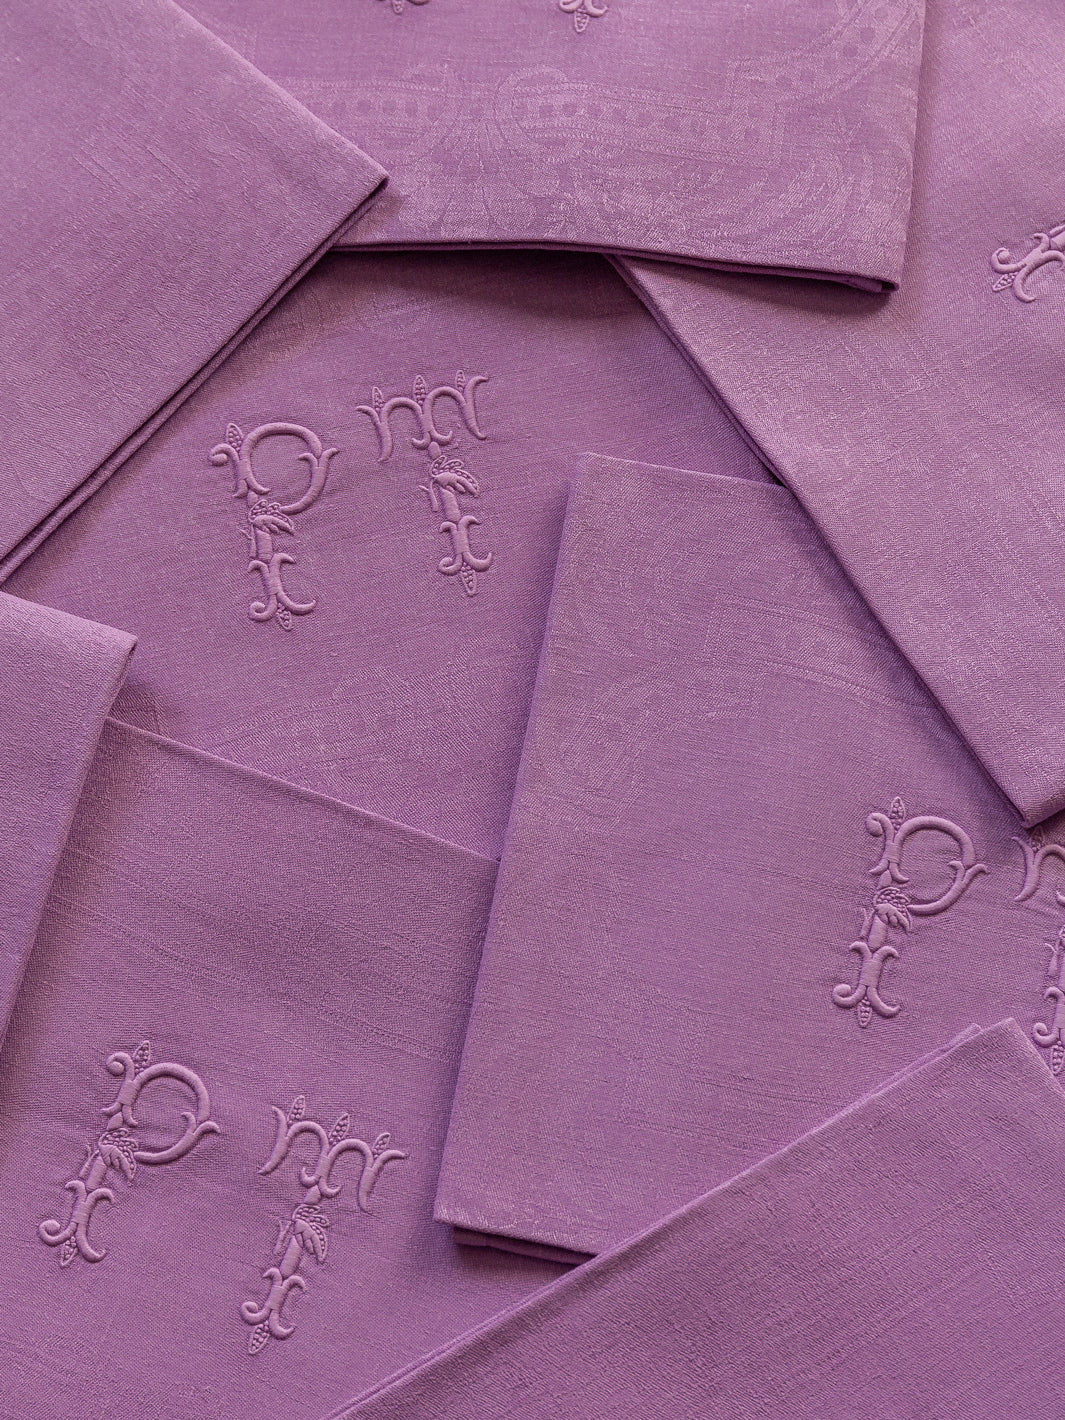 Set of 8 Violet Damask "PT" serviettes